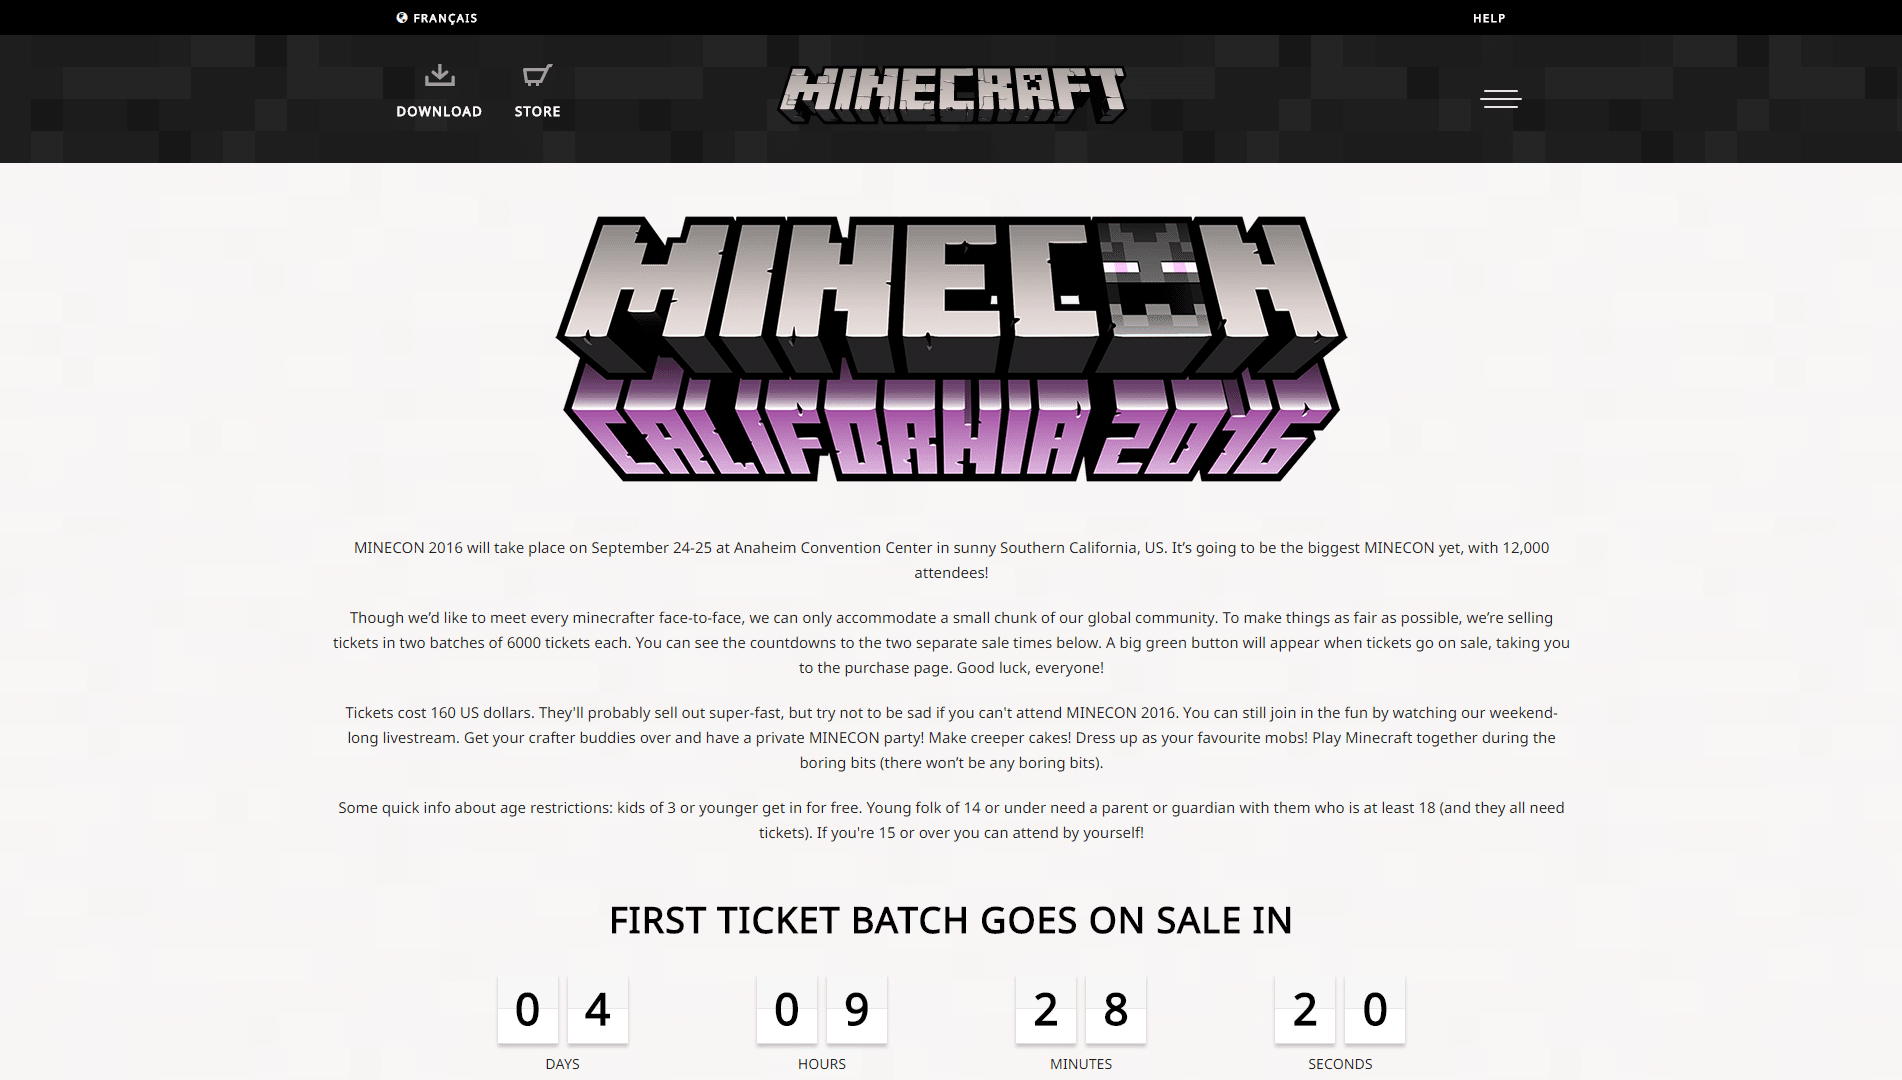 information minecon 2016 sur le nouveau Minecraft.net